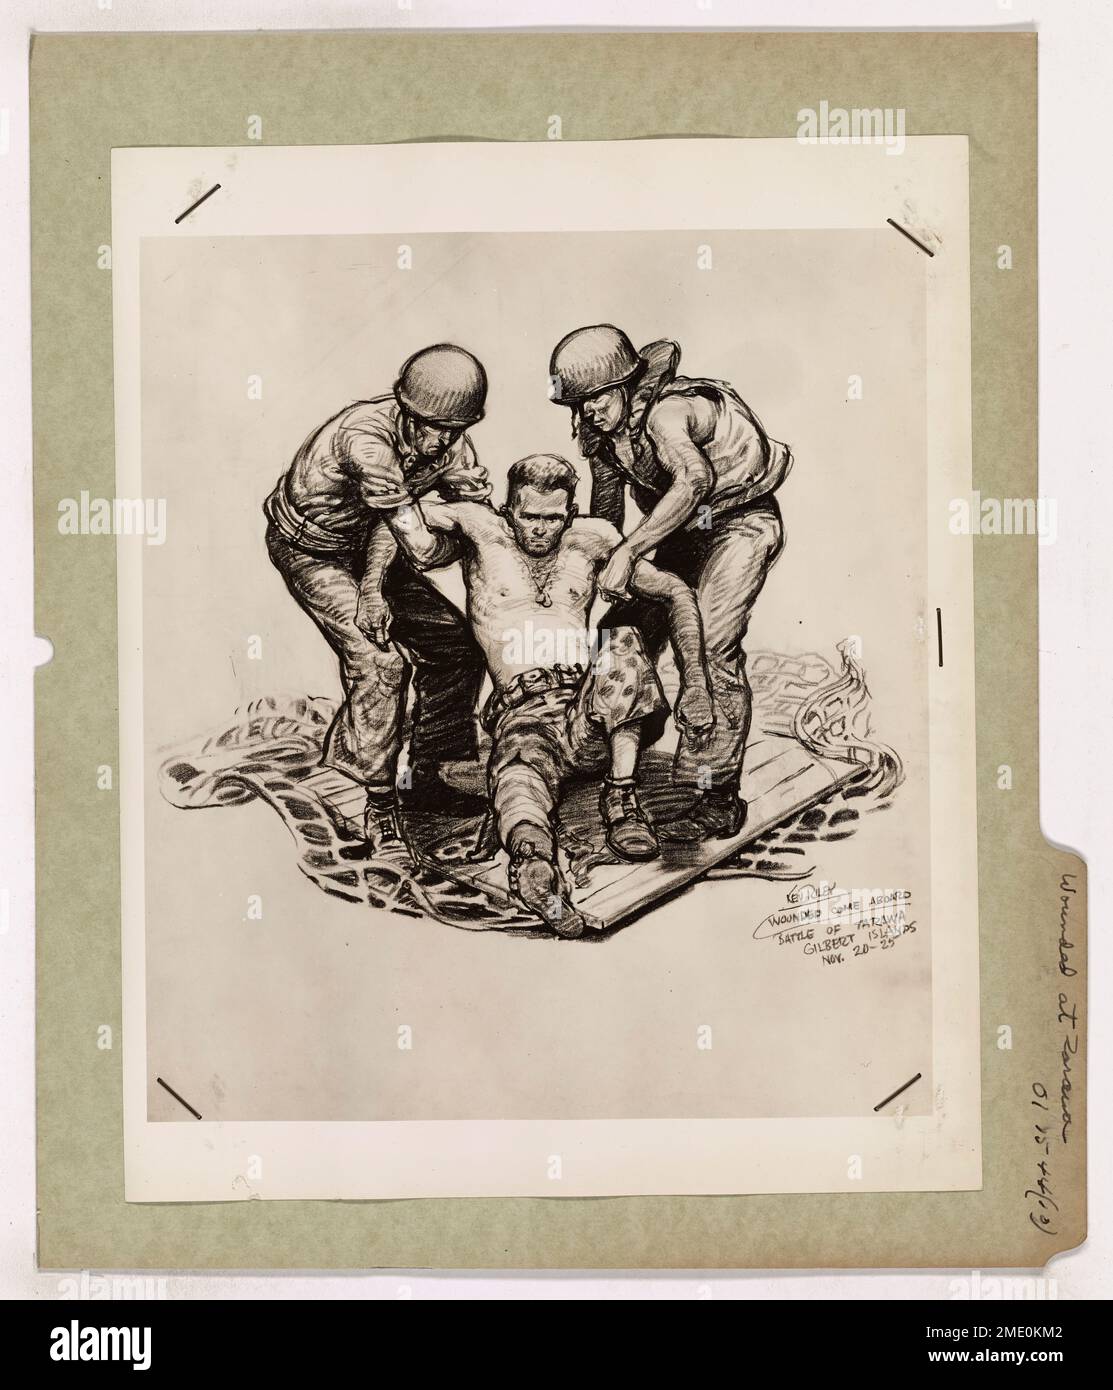 Verwundet in Tarawa. Dieses Bild zeigt einen verwundeten Marine, der während der Invasion von Tarawa an Bord eines Schiffes gebracht wurde, gezeichnet von Ken Riley, dem Kampfkünstler der Küstenwache. Stockfoto